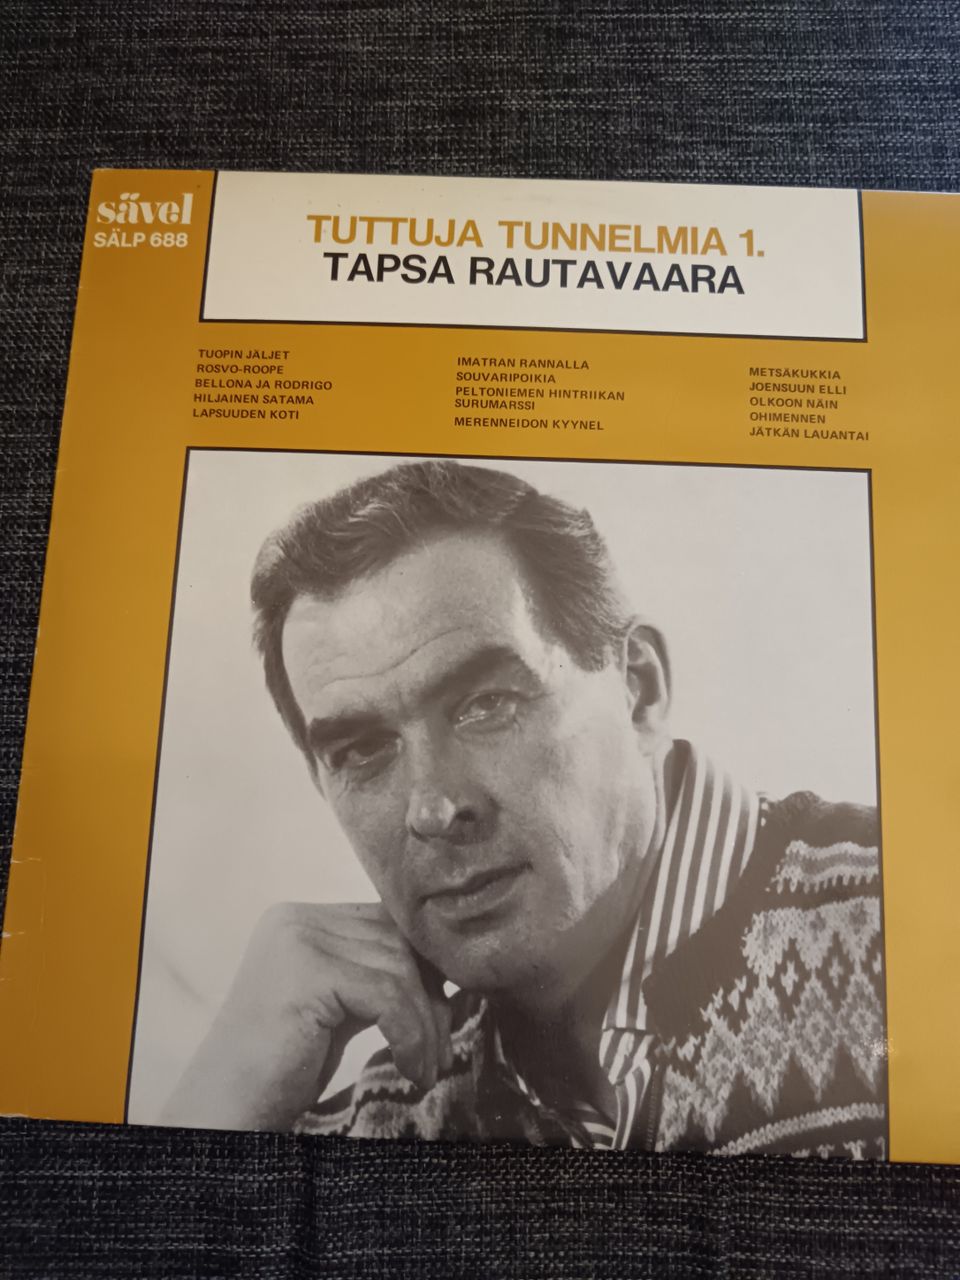 Tapio Rautavaara - Tuttuja tunnelmia LP